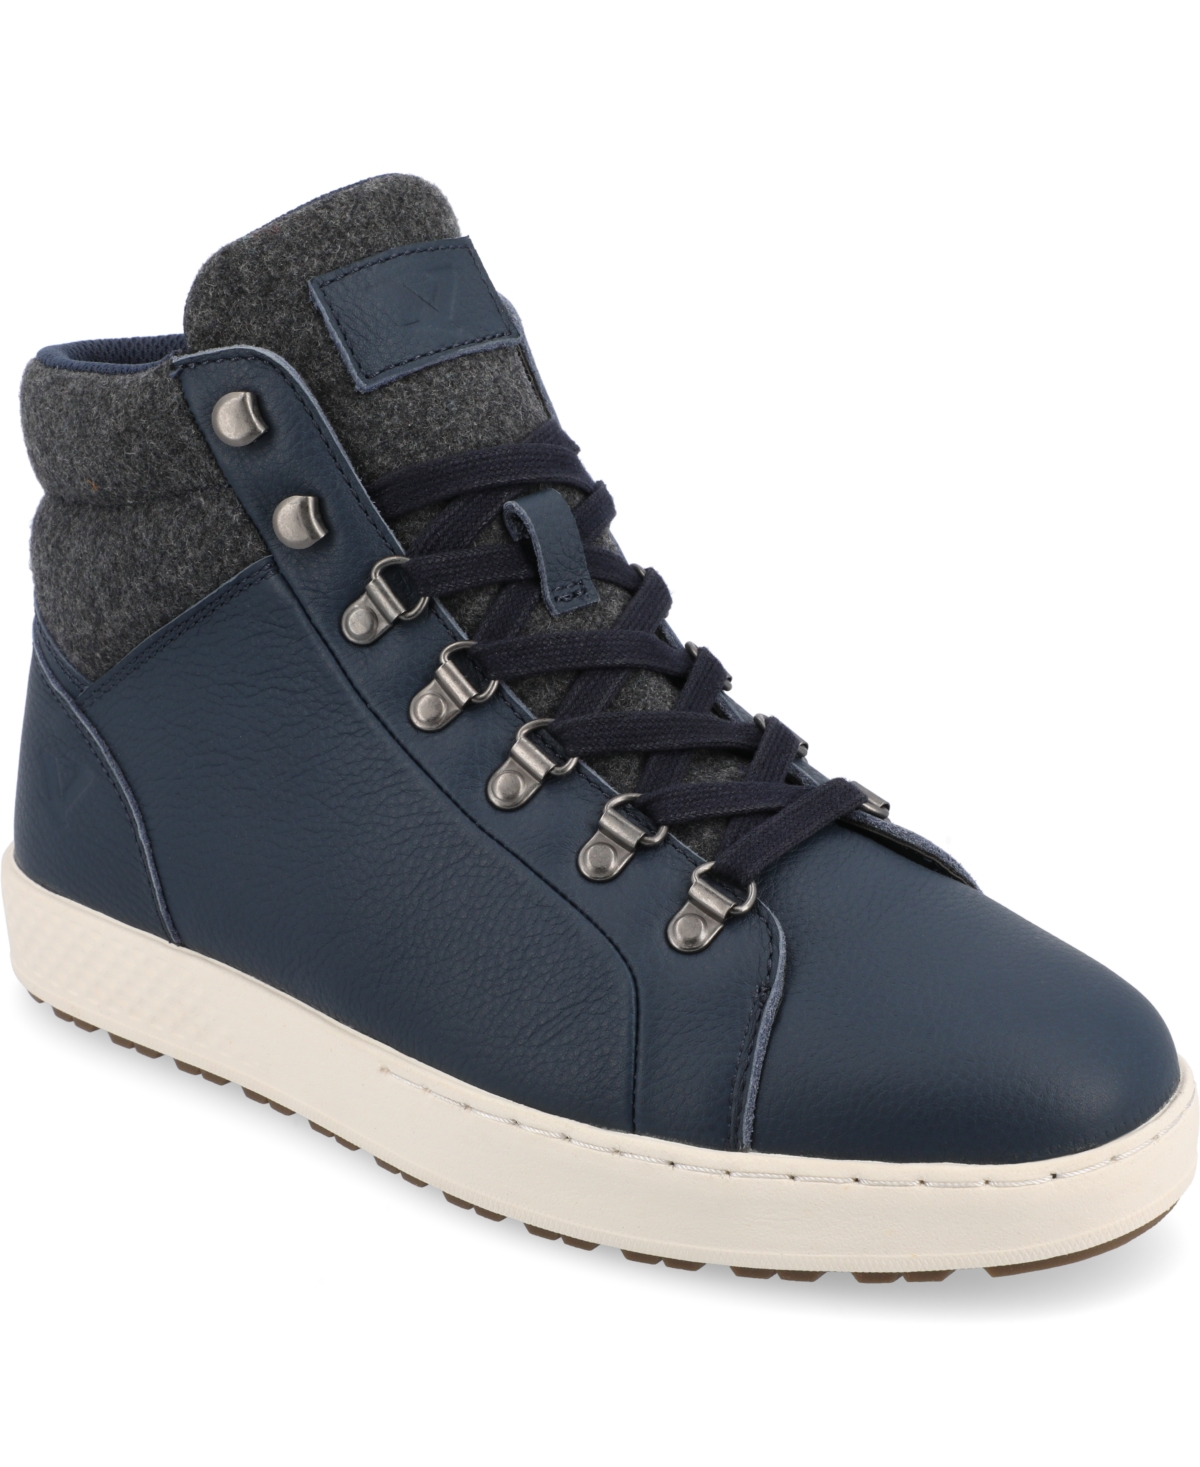 Men's Ruckus Tru Comfort Foam High Top Sneakers - Blue